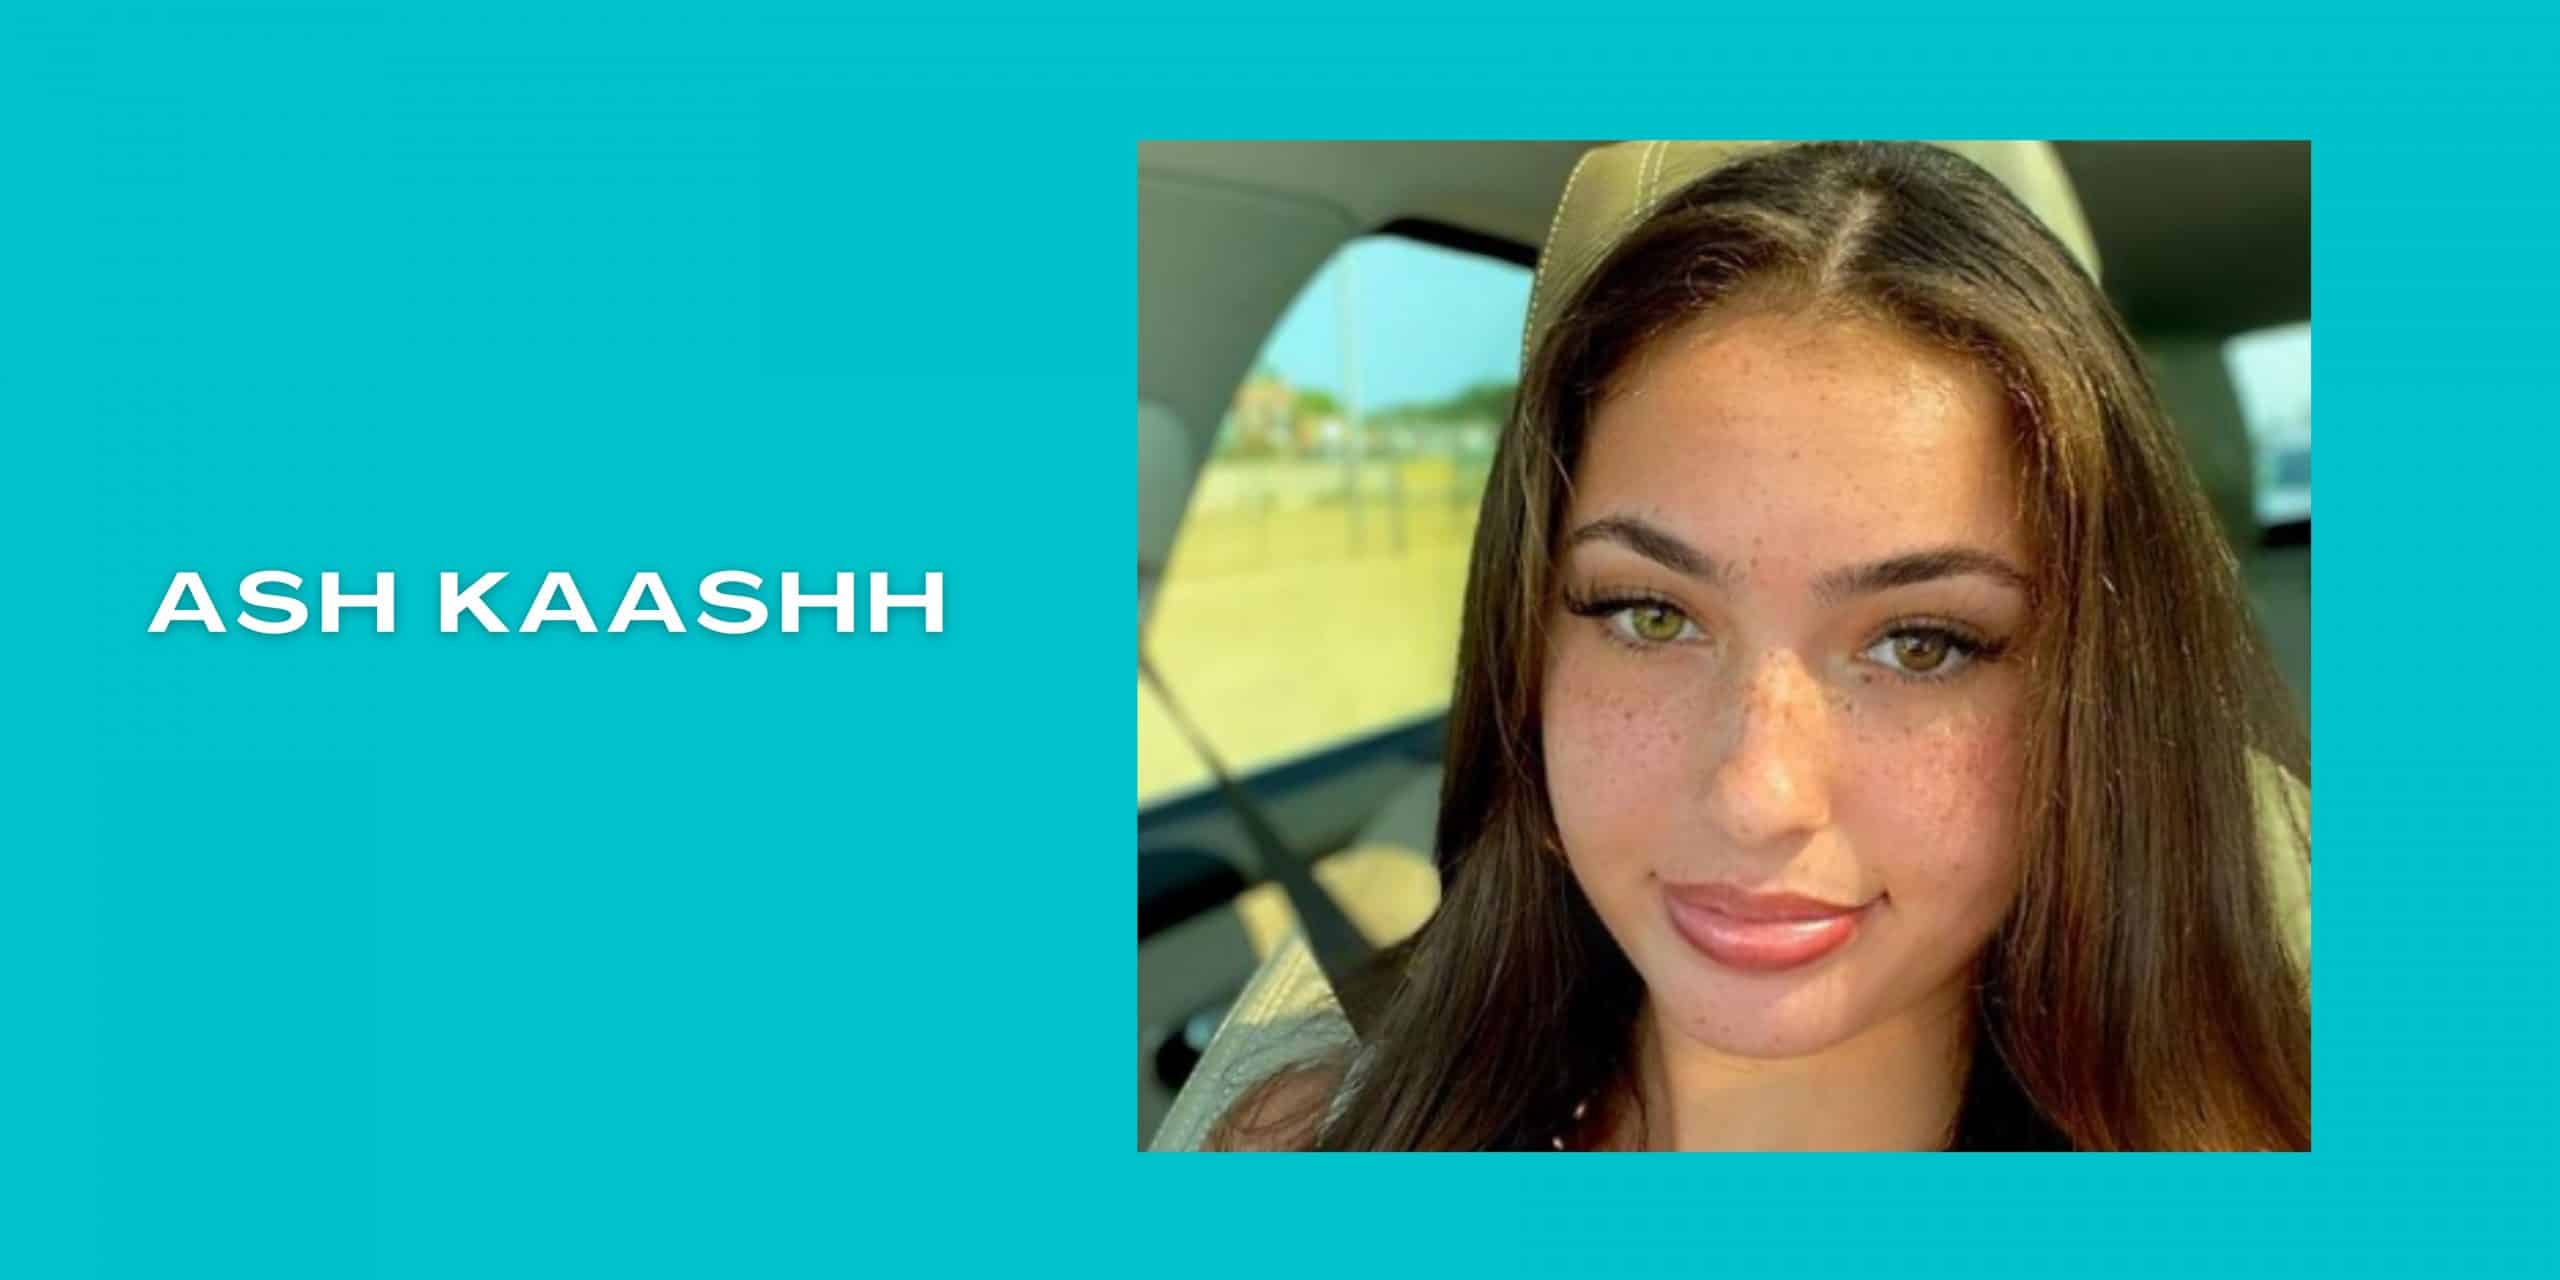 Ash kaashh real name